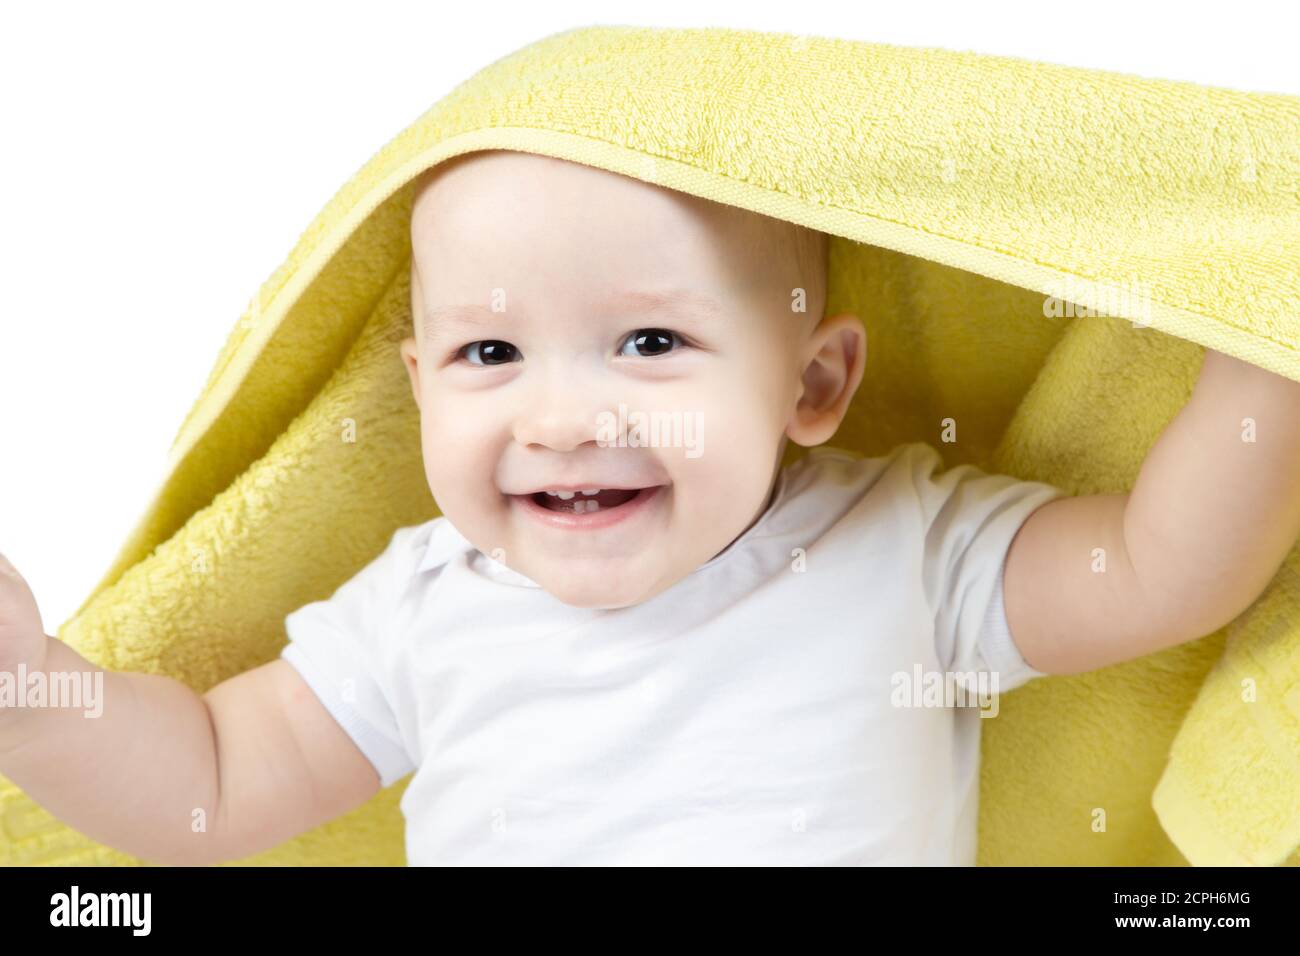 Rire bébé de onze mois sous une serviette jaune Banque D'Images